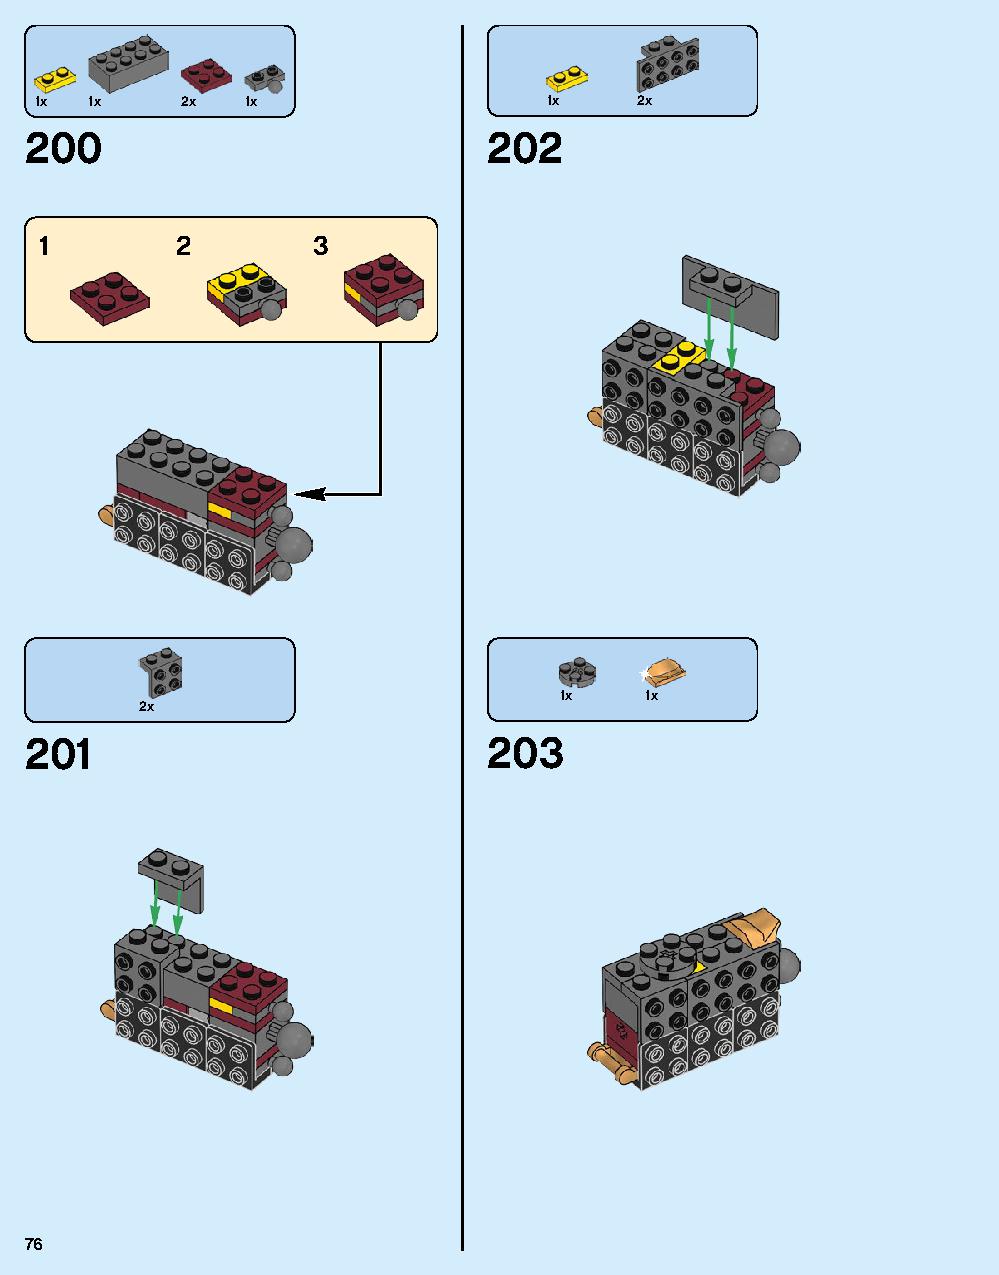 어벤져스 헐크버스터: 울트론 에디션 76105 레고 세트 제품정보 레고 조립설명서 76 page